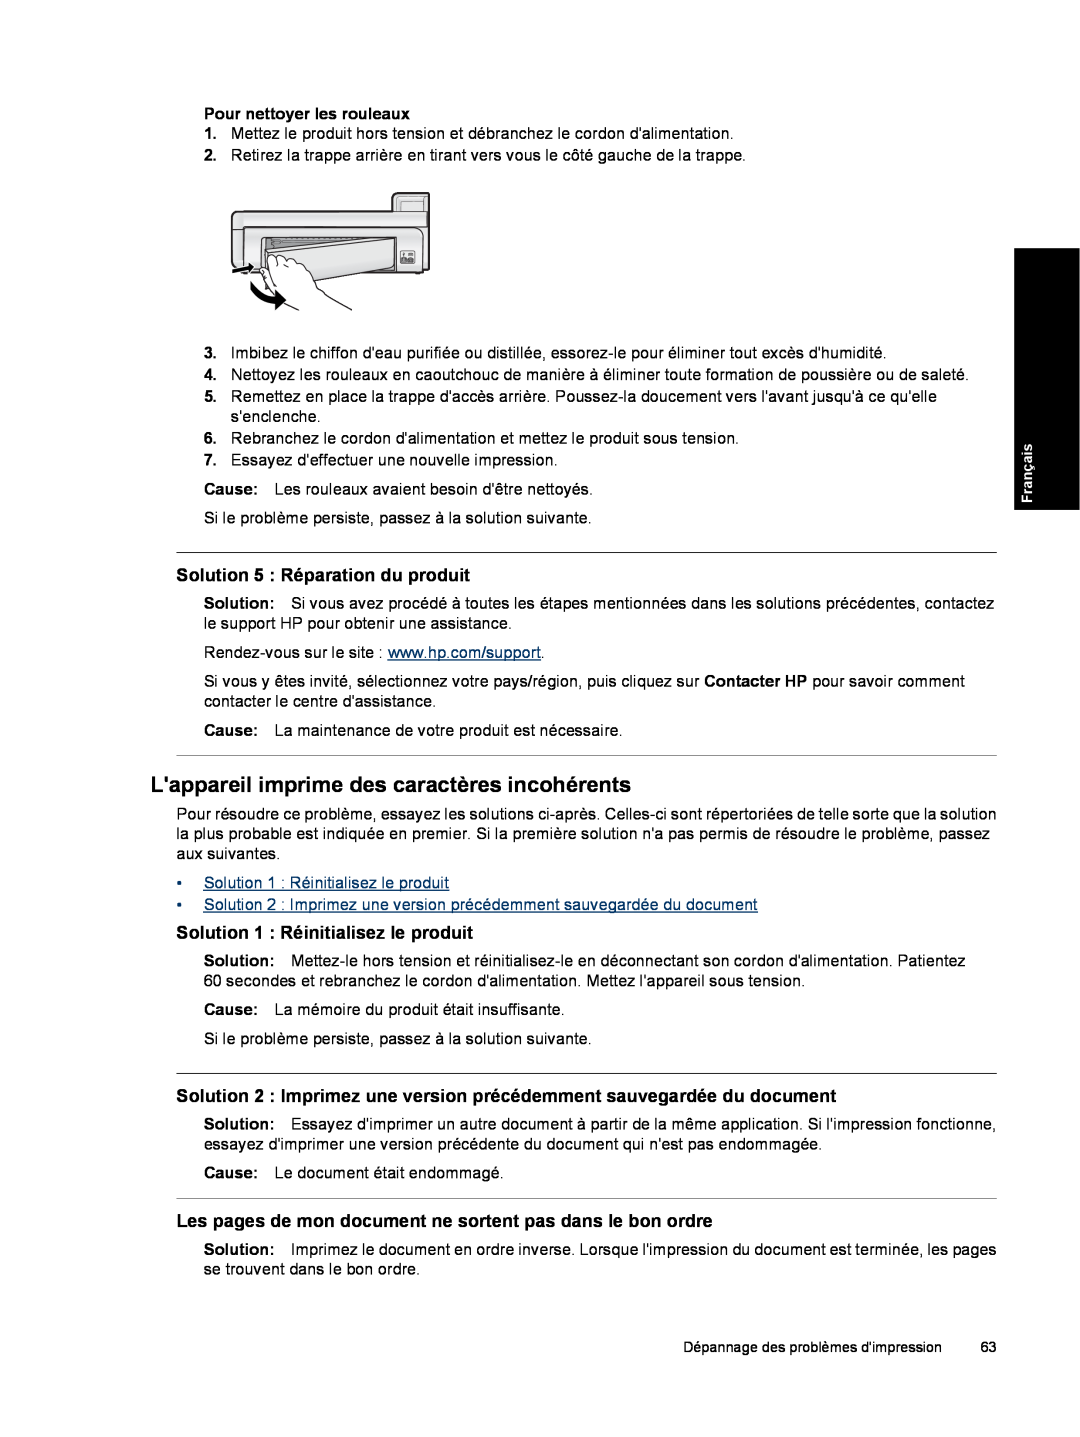 HP B8550 Photo CB981A#B1H manual Lappareil imprime des caractères incohérents, Solution 5 Réparation du produit 